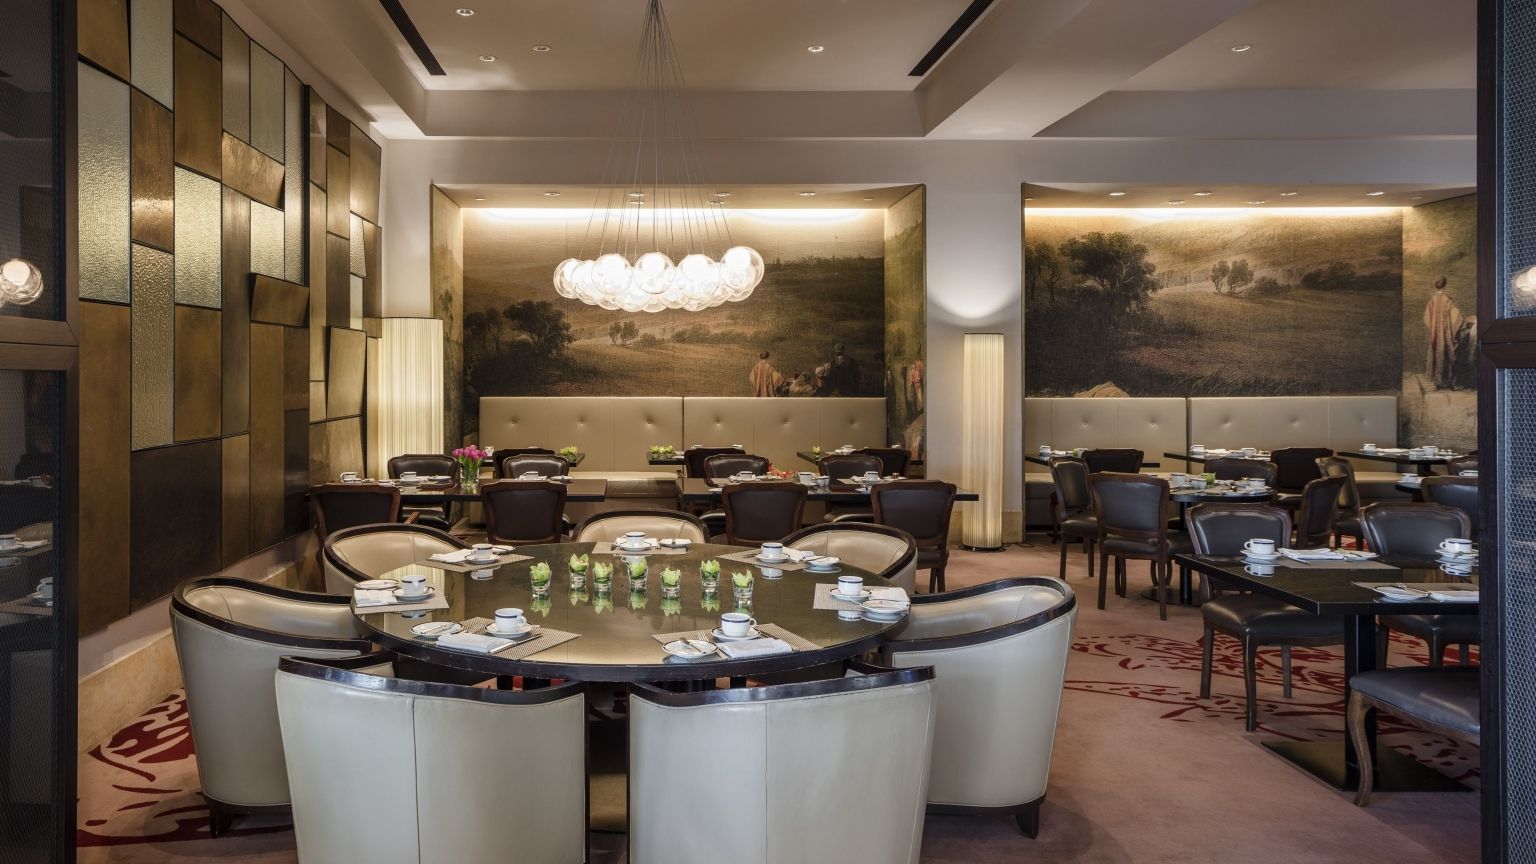 Seasons Restaurant| David Citadel Hotel